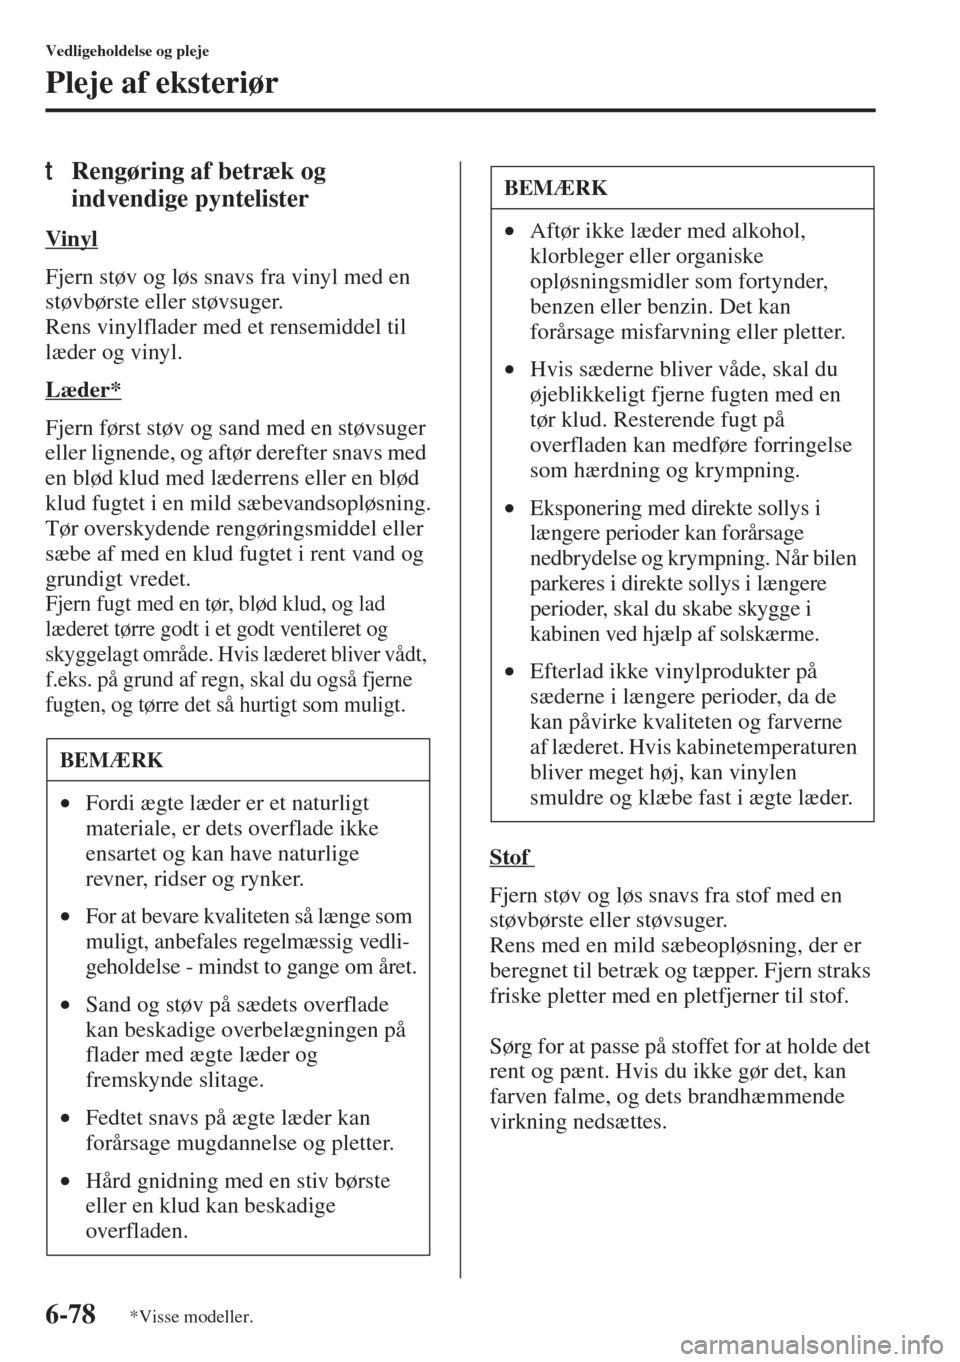 MAZDA MODEL 3 HATCHBACK 2015  Instruktionsbog (in Danish) 6-78
Vedligeholdelse og pleje
Pleje af eksteriør
tRengøring af betræk og 
indvendige pyntelister
Vinyl
Fjern støv og løs snavs fra vinyl med en 
støvbørste eller støvsuger.
Rens vinylflader me